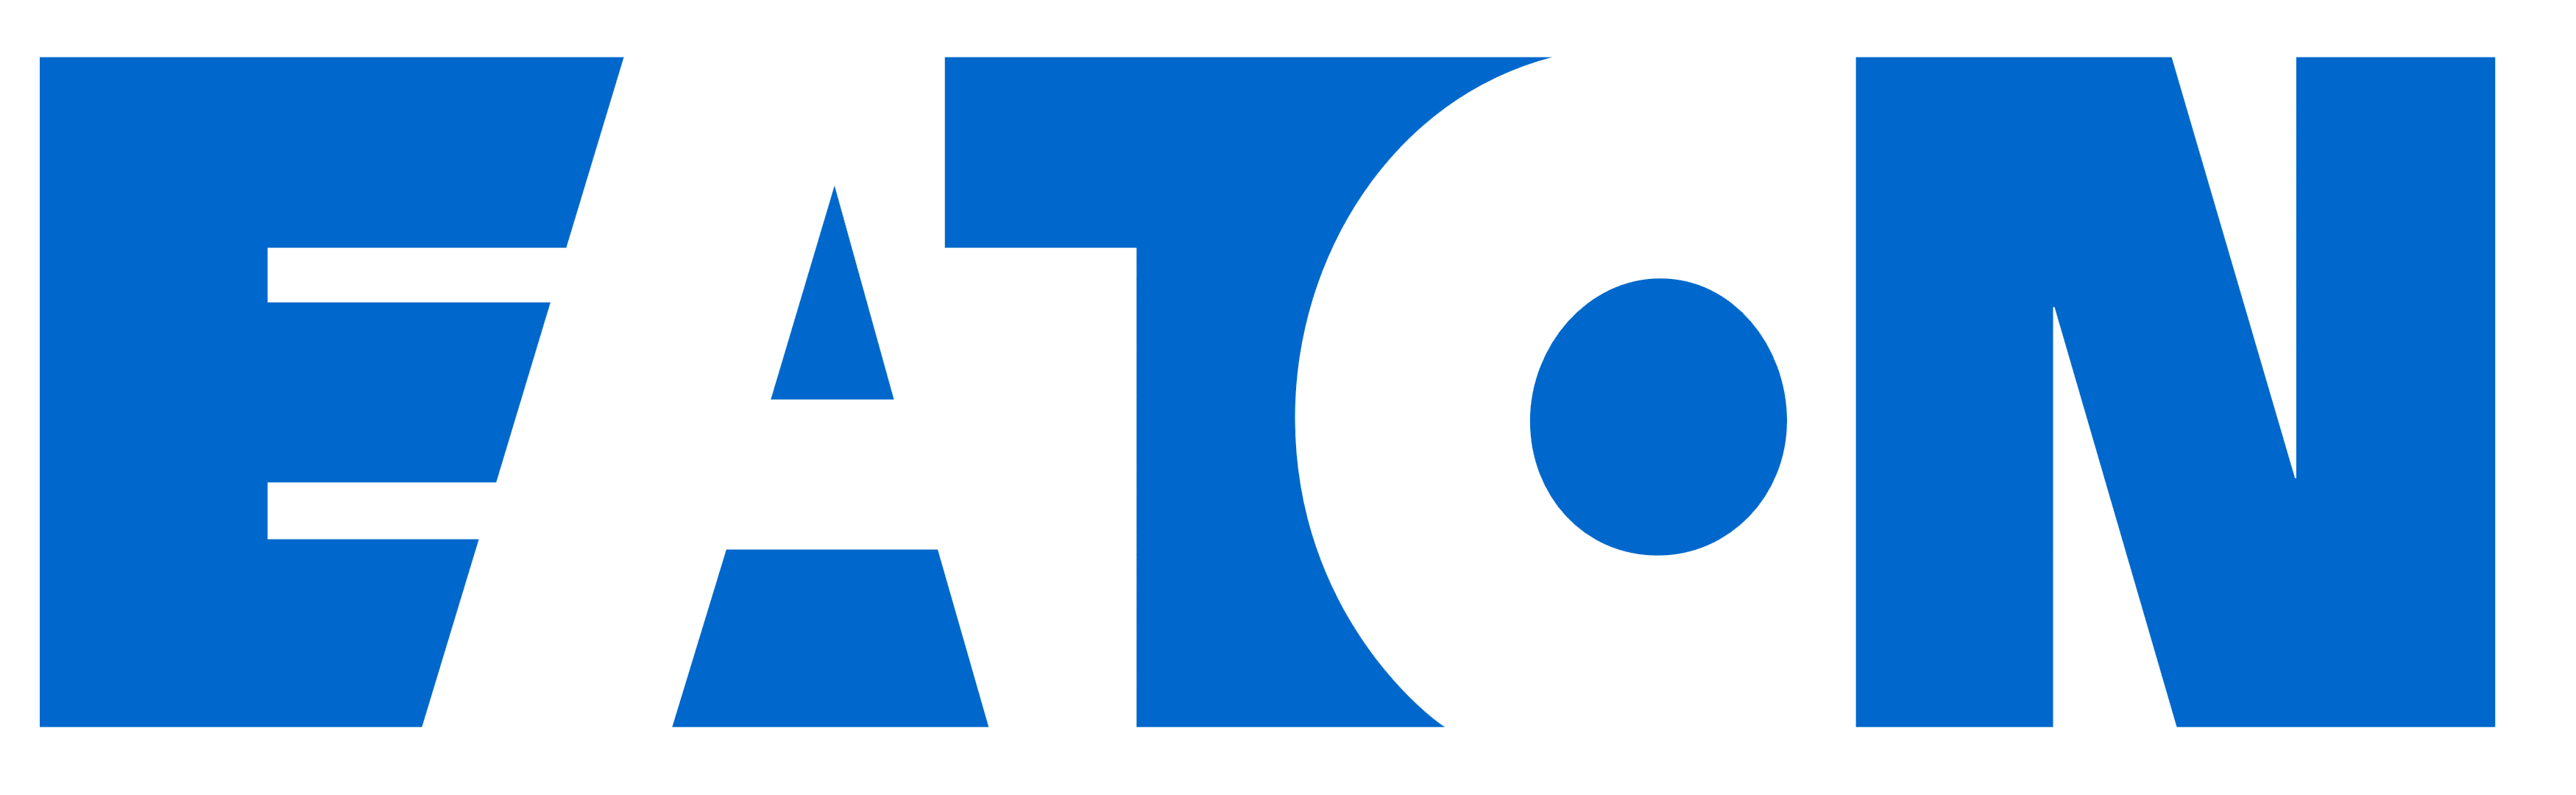 Eaton logo, logotype